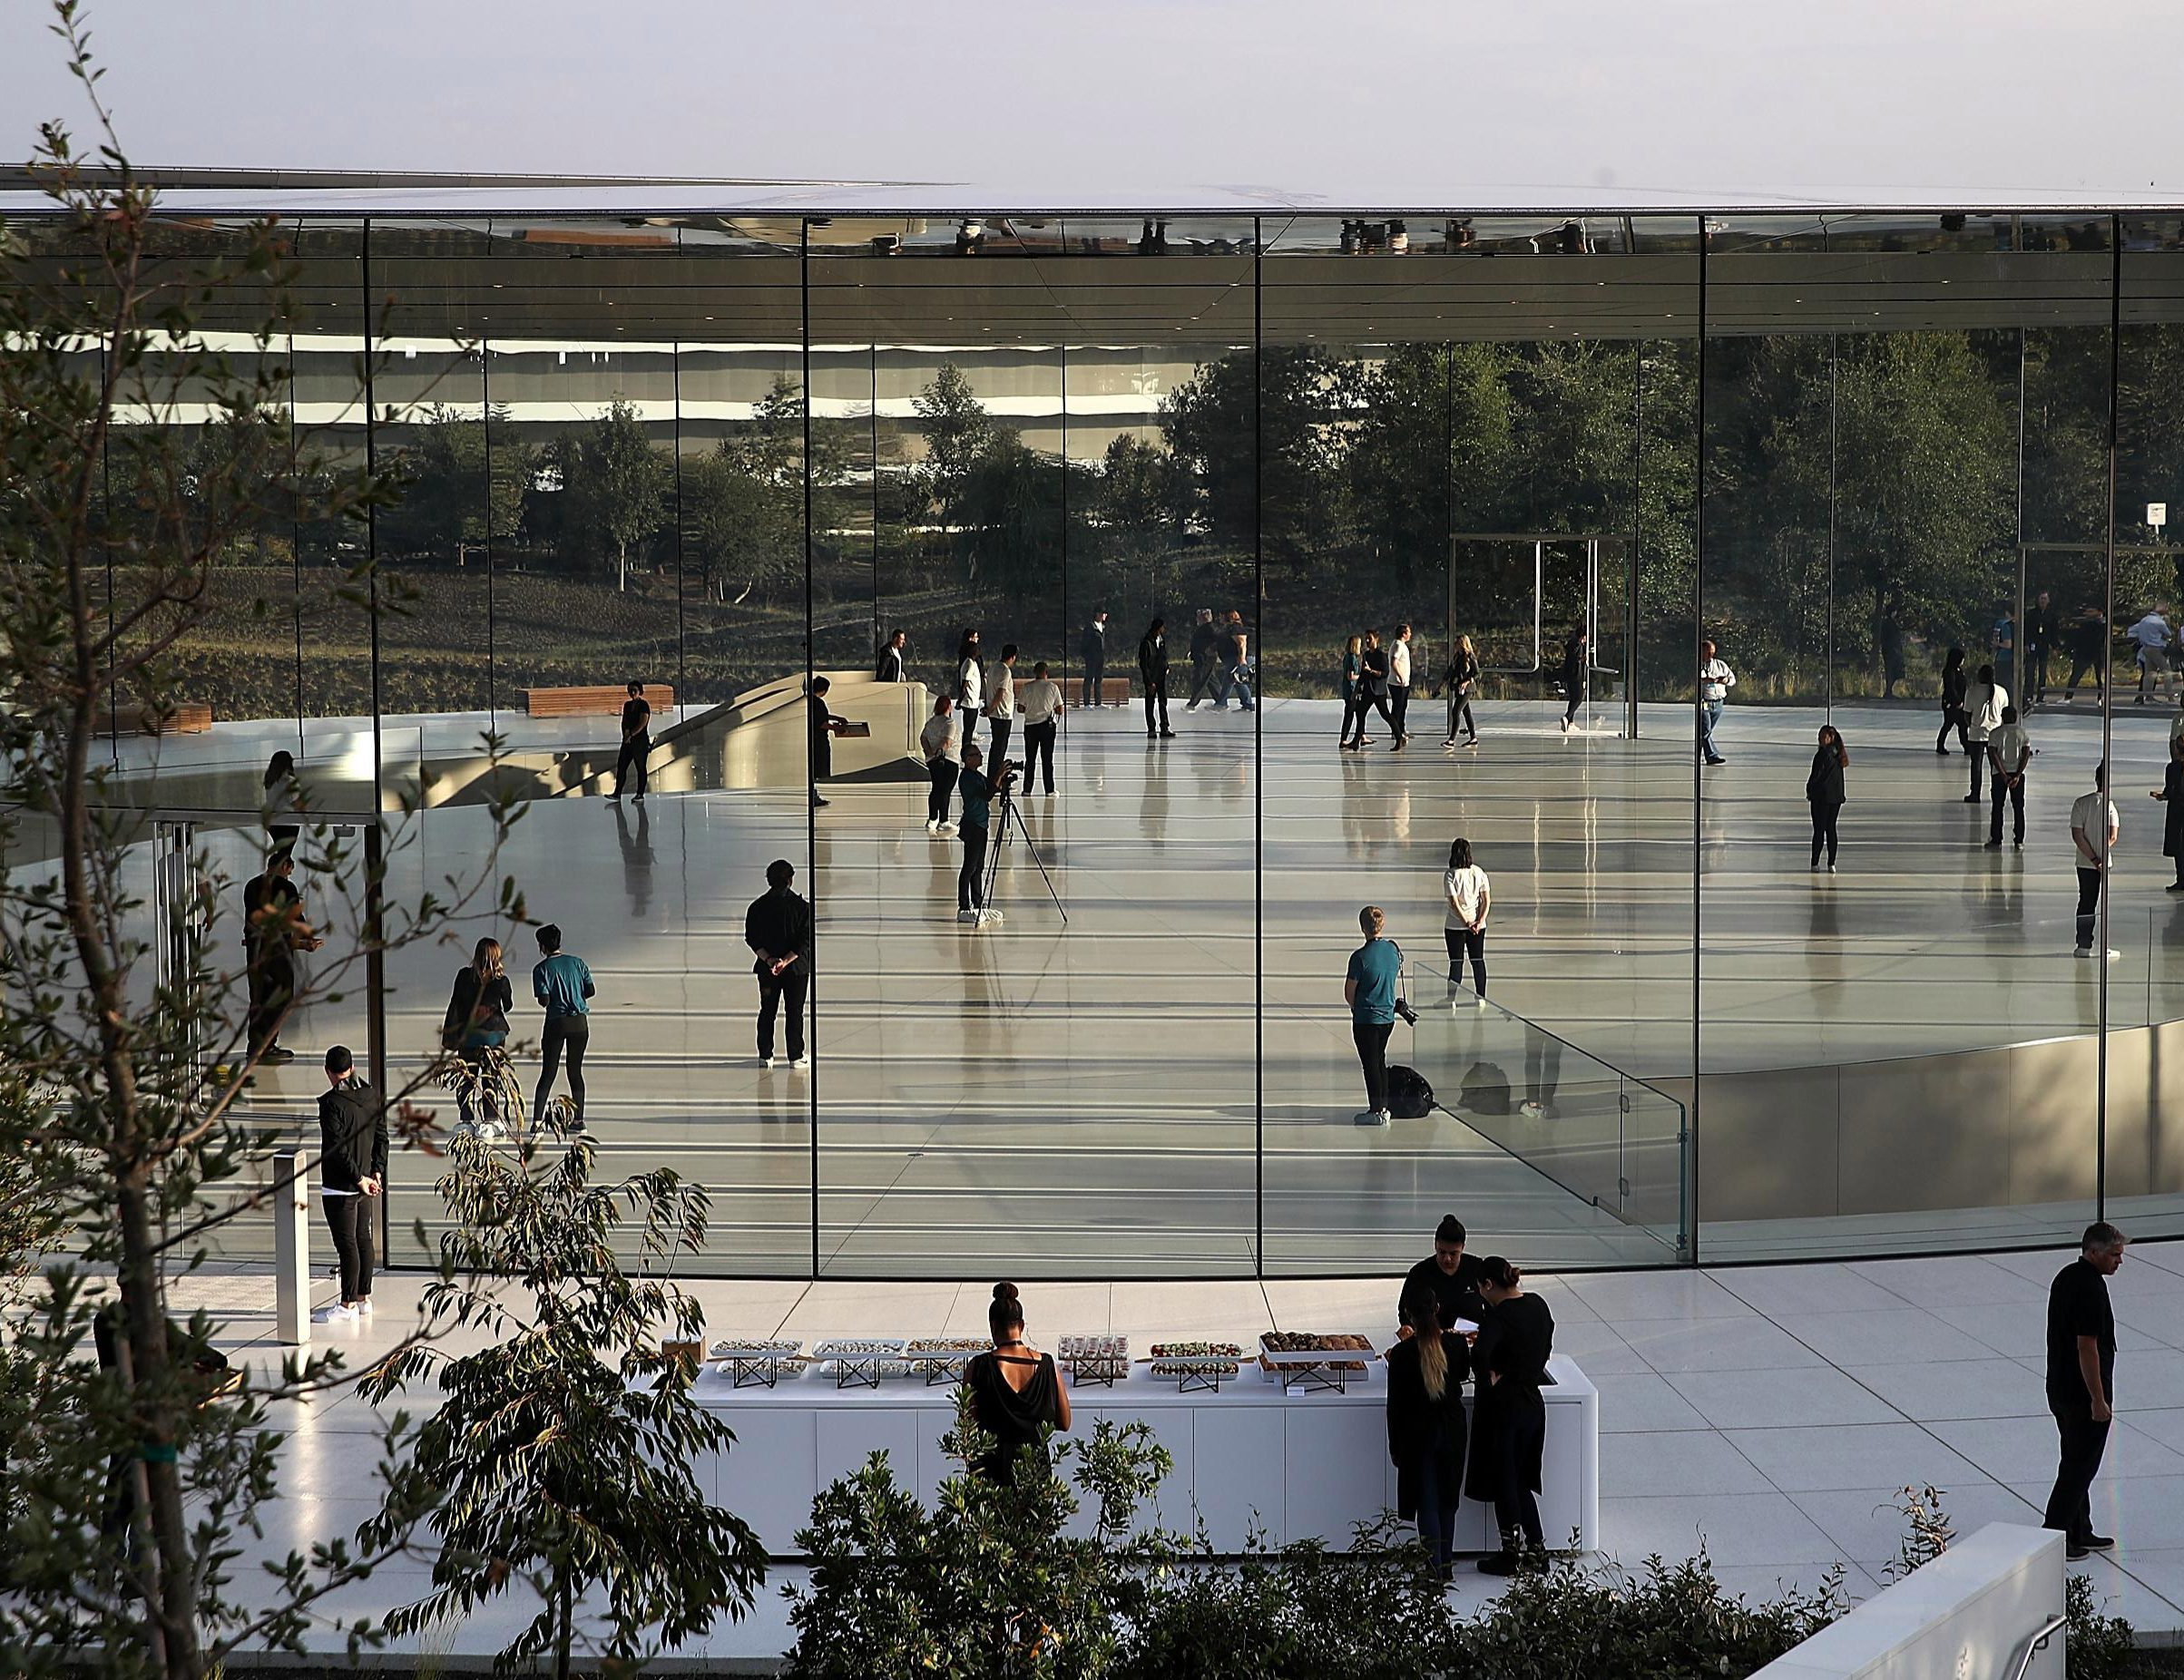  Peluncuran iPhone 8 adalah acara besar pertama di yang baru Apple Kampus taman